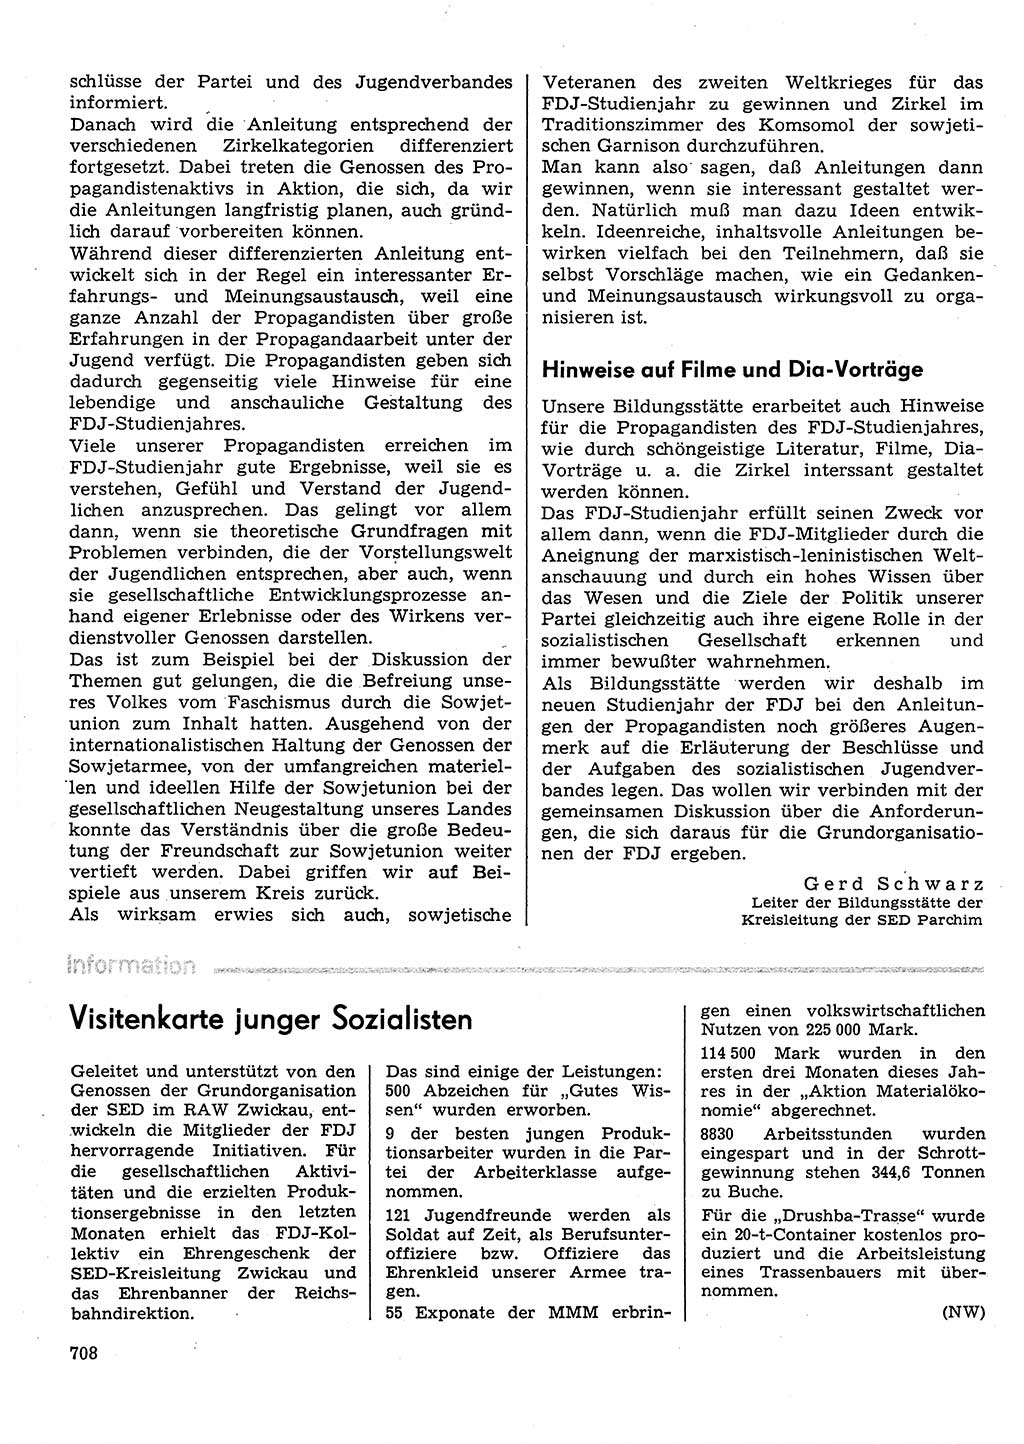 Neuer Weg (NW), Organ des Zentralkomitees (ZK) der SED (Sozialistische Einheitspartei Deutschlands) für Fragen des Parteilebens, 30. Jahrgang [Deutsche Demokratische Republik (DDR)] 1975, Seite 708 (NW ZK SED DDR 1975, S. 708)